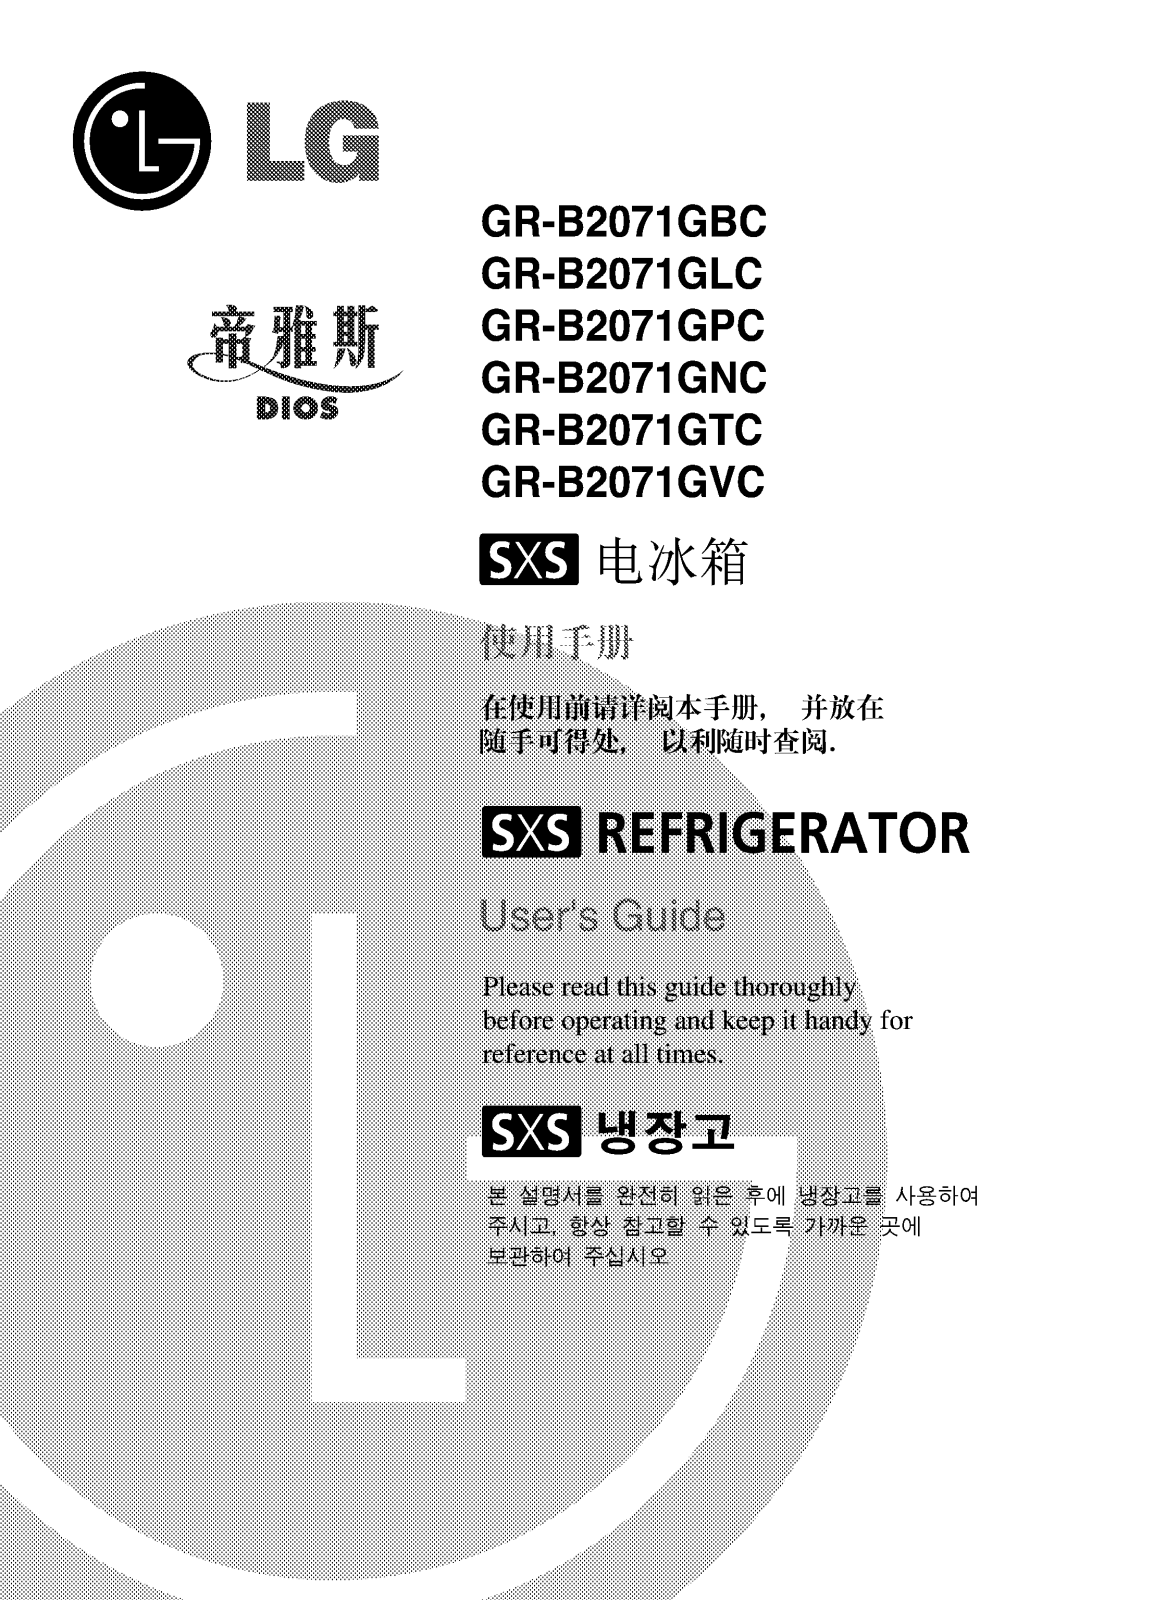 Lg GR-B2071GPC, GR-B2071GLC, GR-B2071GVC, GR-B2071GTC, GR-B2071GNC User Manual